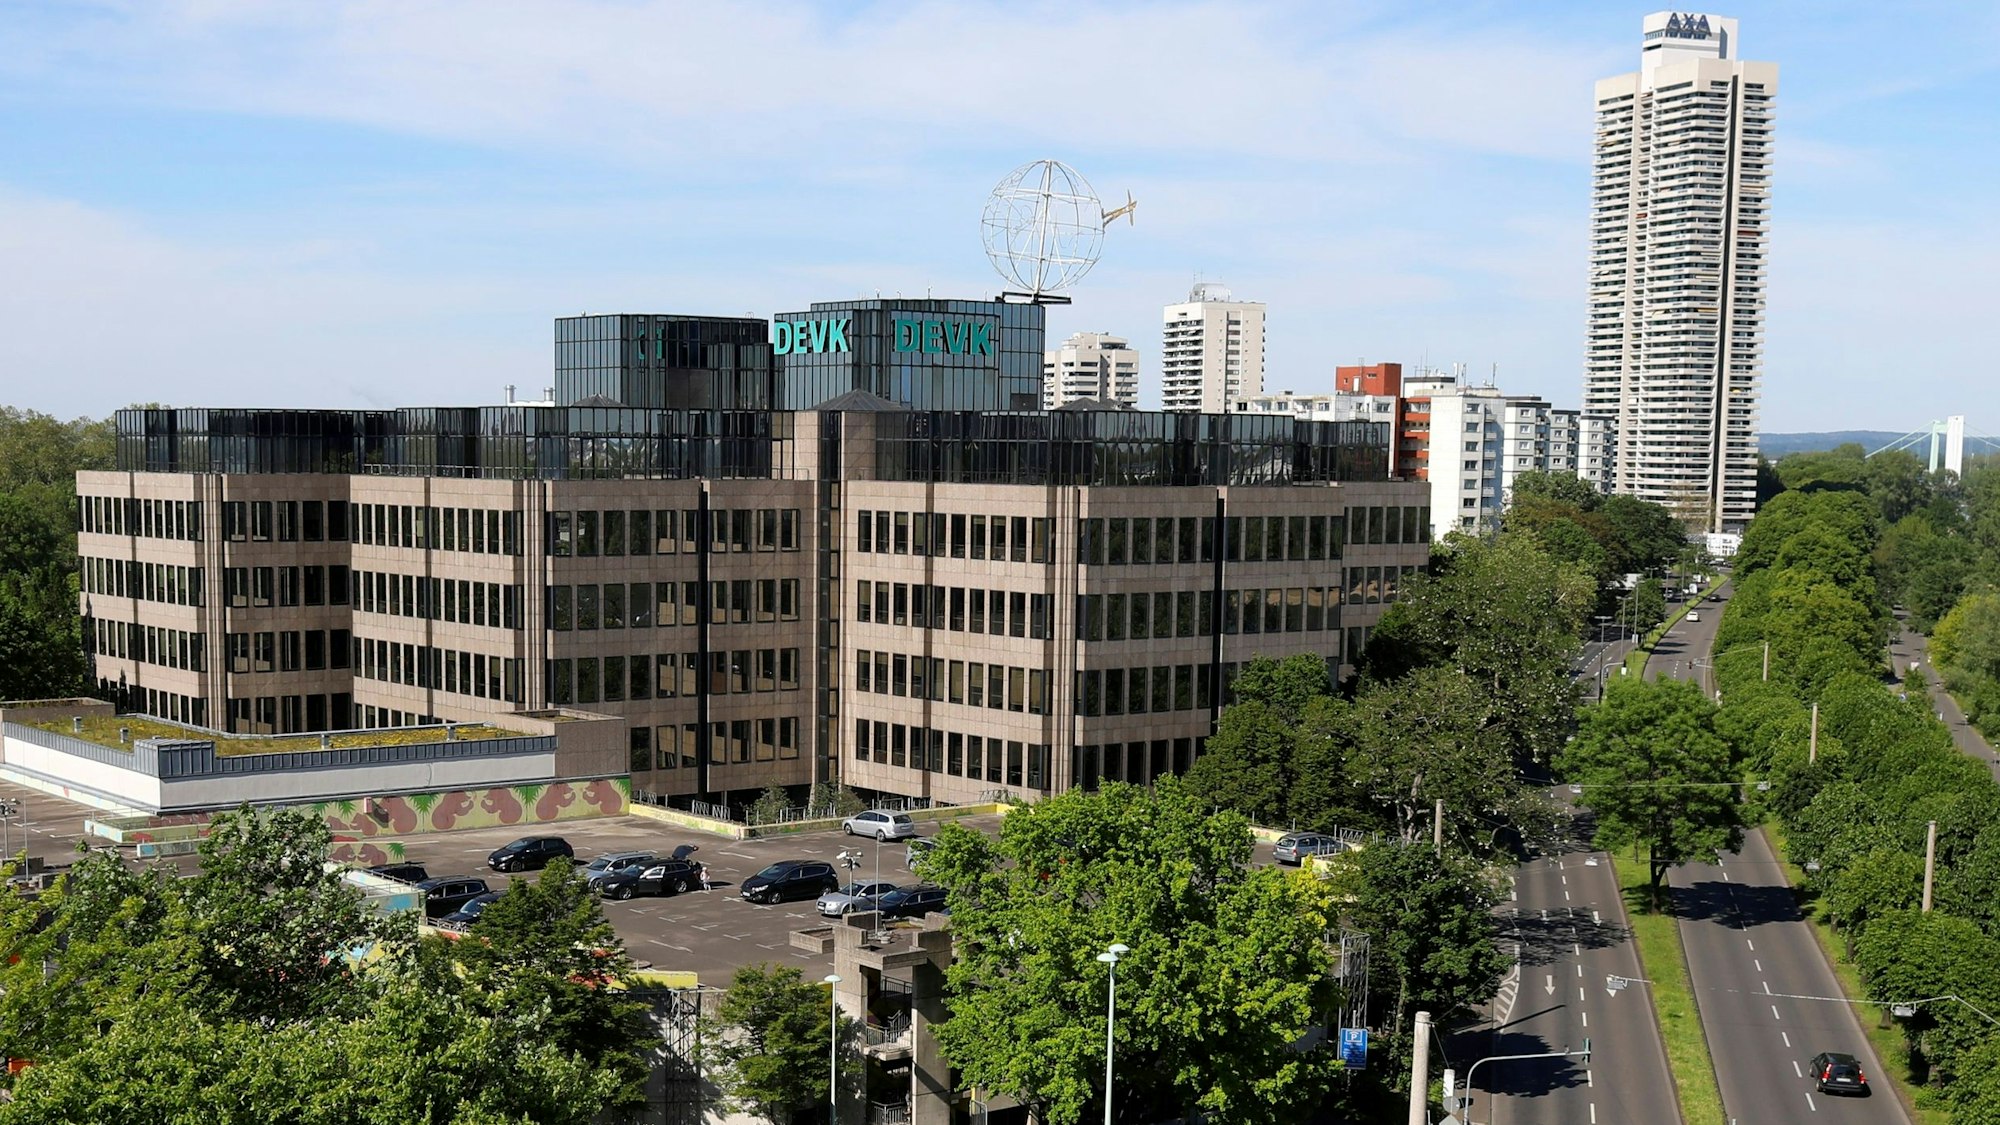 Das Gebäude der Hauptniederlassung der DEVK am 1. Juni 2021 in Köln. Im Vordergrund das Zoo-Parkhaus – dort soll das neue Büro-Hochhaus entstehen.